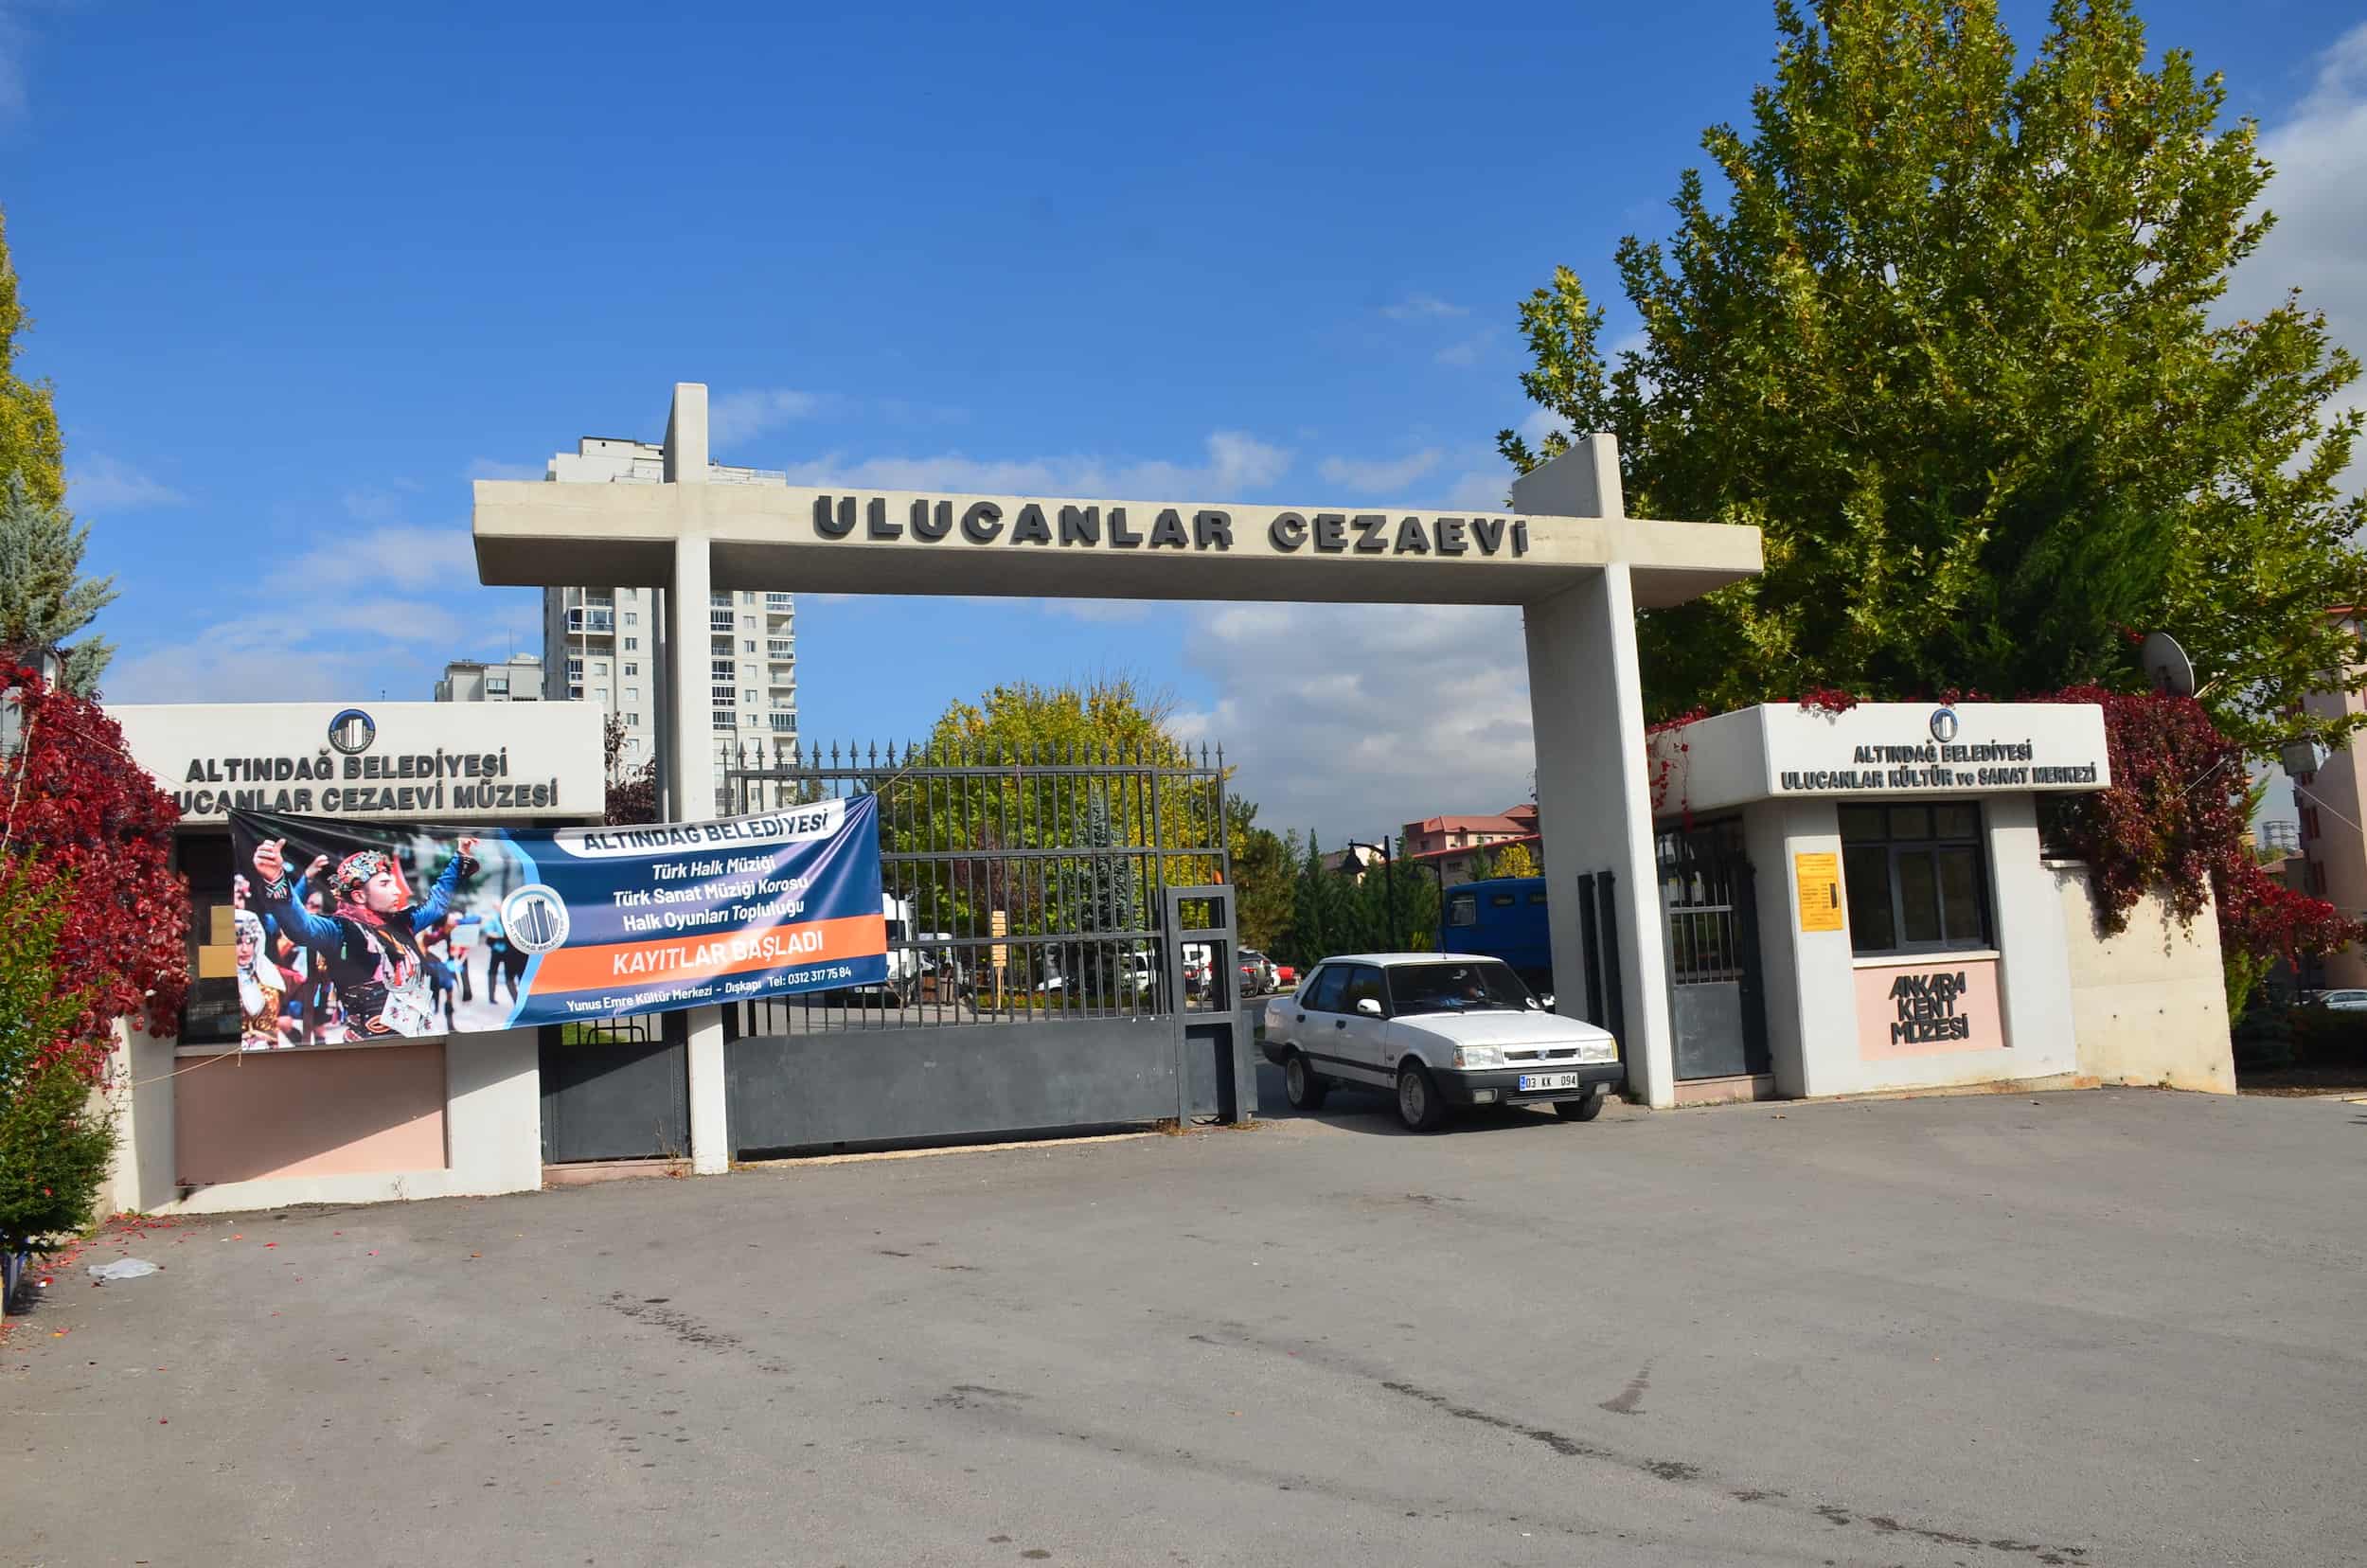 Ulucanlar Prison in Ankara, Turkey